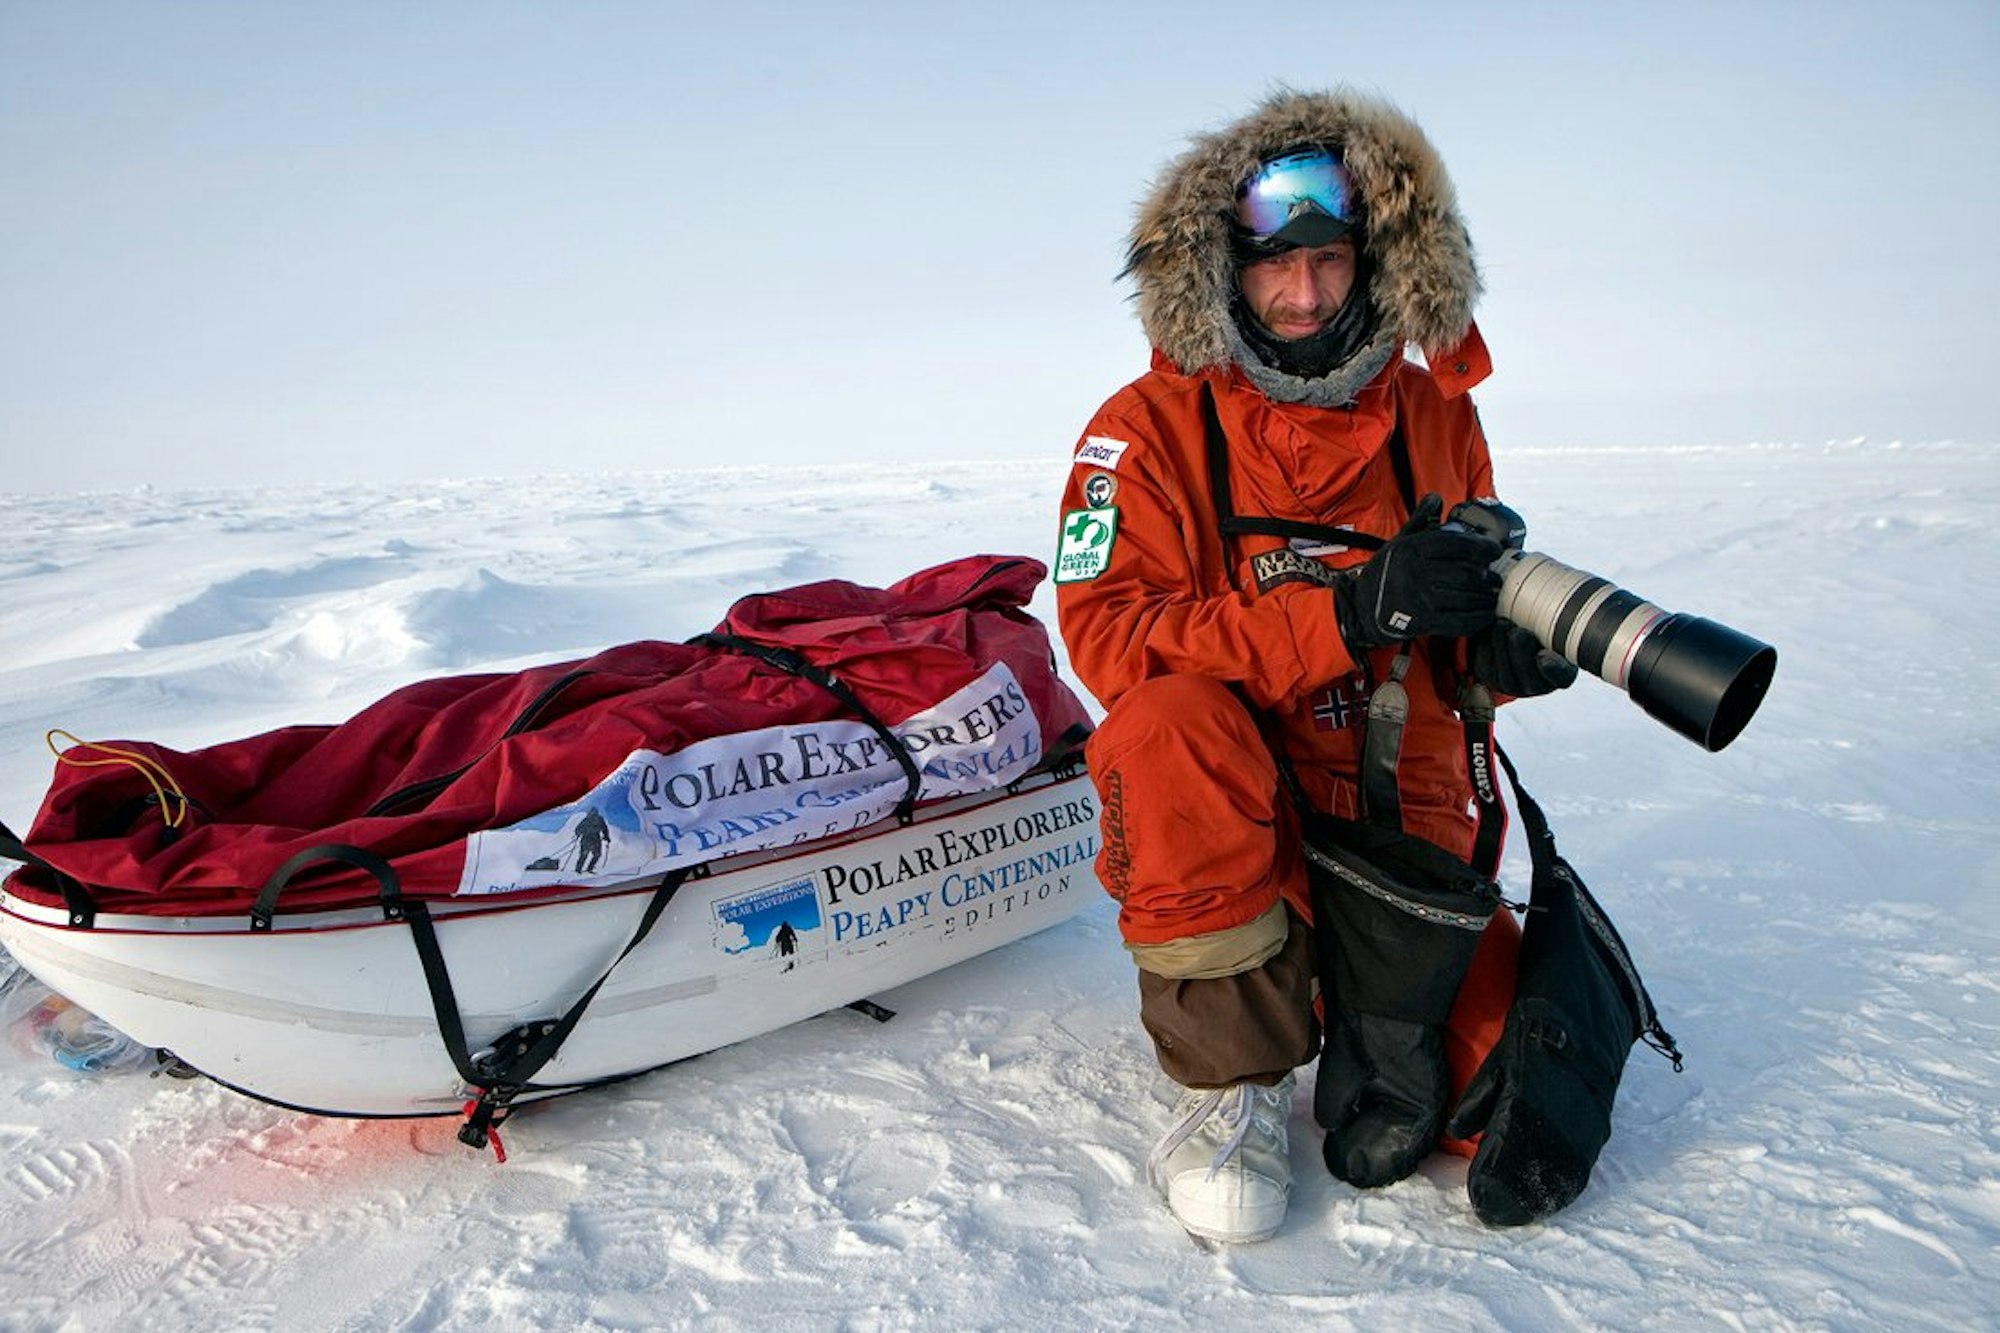 Fotograf Sebastian Copeland in Schutzkleidung gegen die Kälte